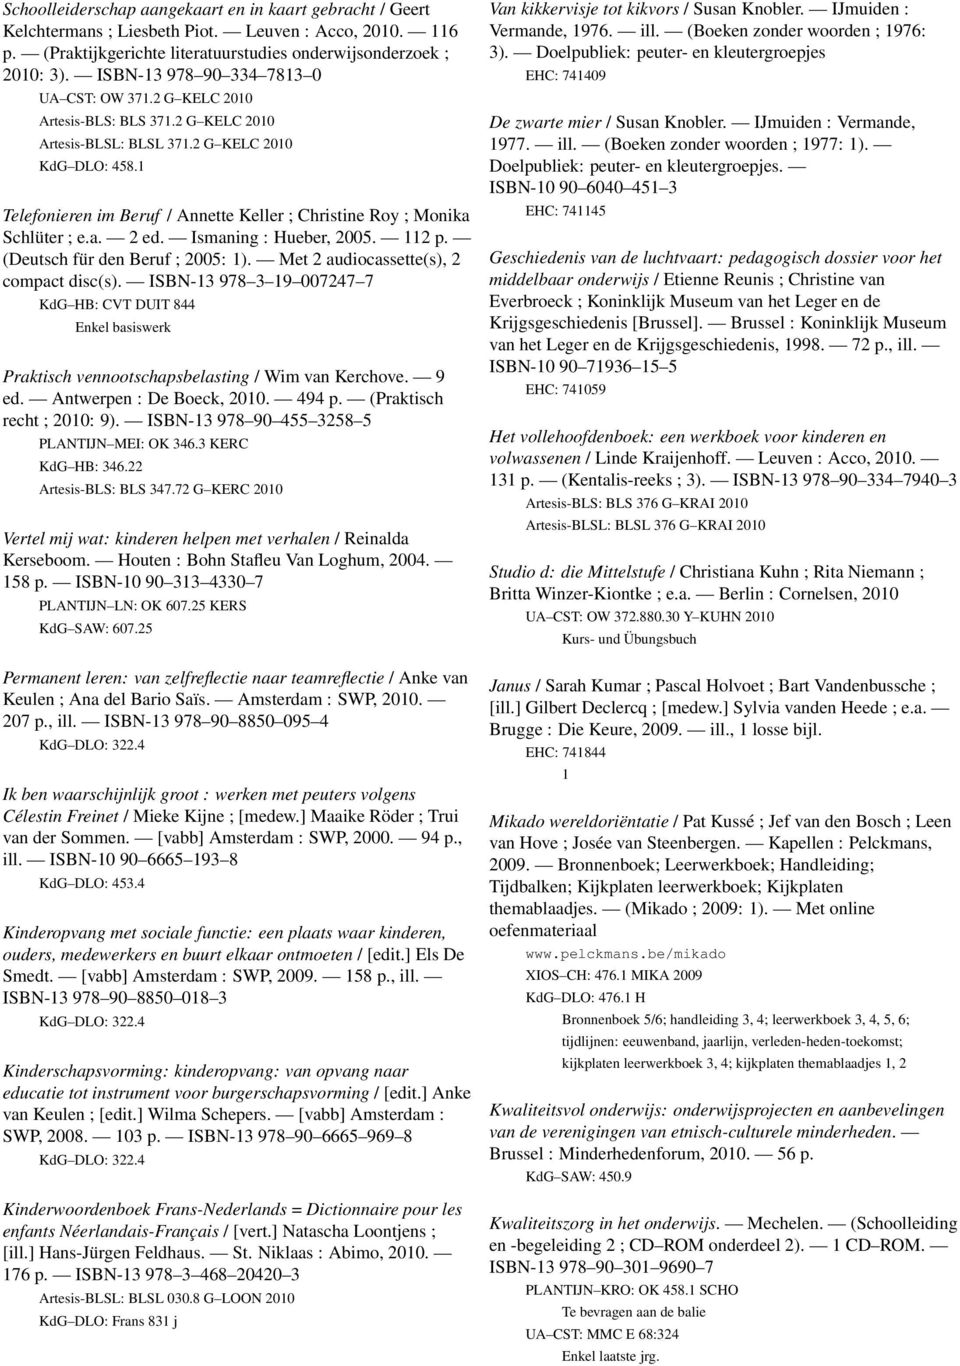 Telefonieren im Beruf / Annette Keller ; Christine Roy ; Monika Schlüter ; e.a. 2 ed. Ismaning : Hueber, 2005. 2 p. (Deutsch für den Beruf ; 2005: ). Met 2 audiocassette(s), 2 compact disc(s).